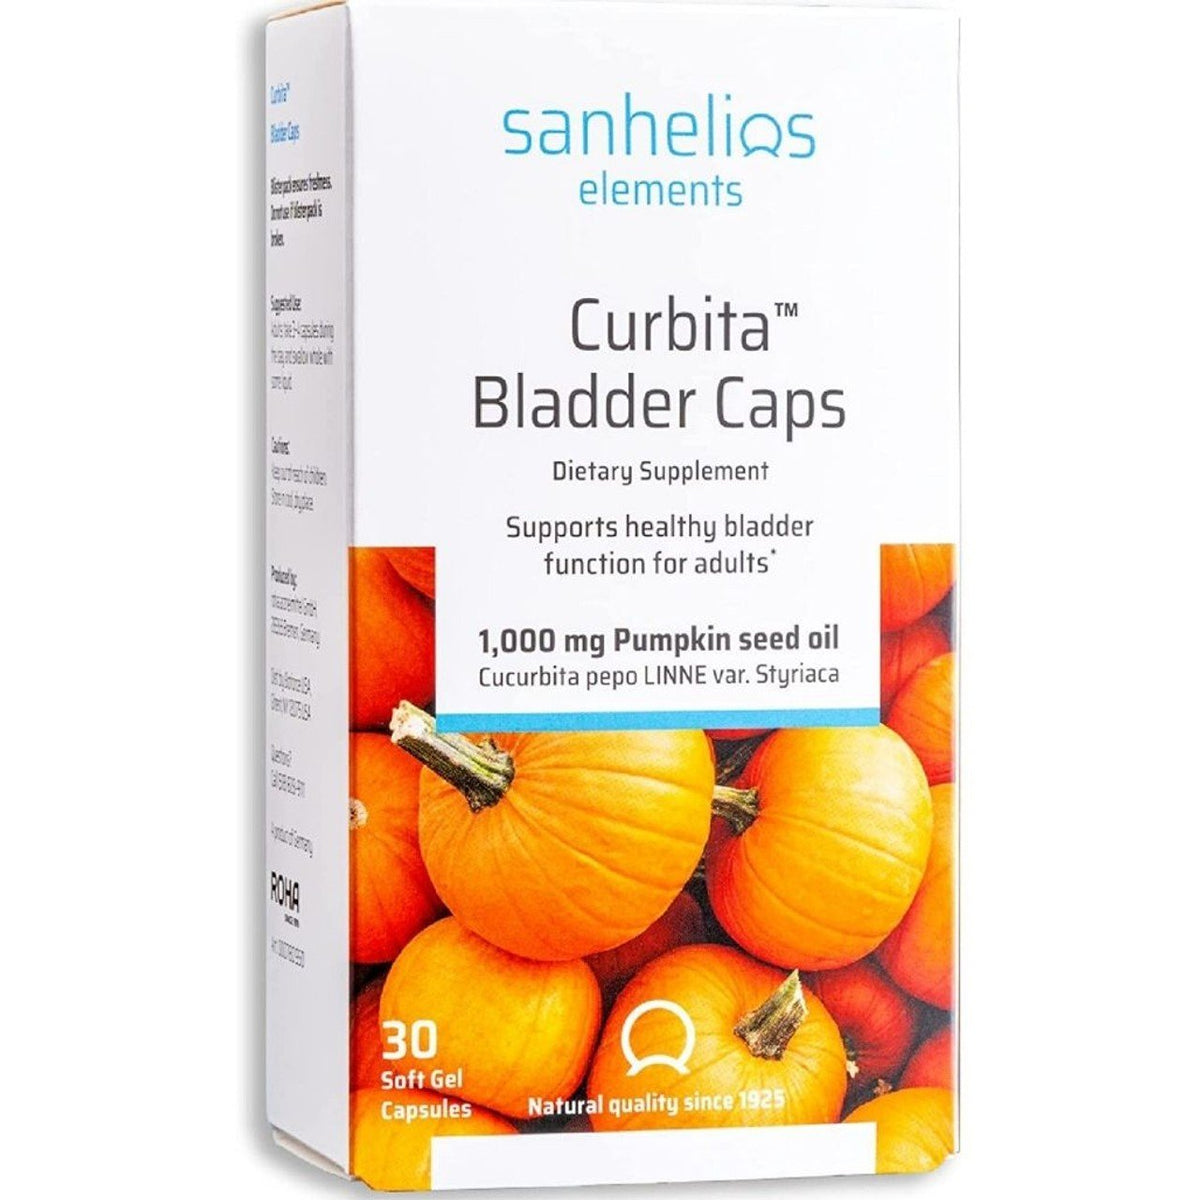 Sanhelios Curbita Bladder Caps 30 Softgel